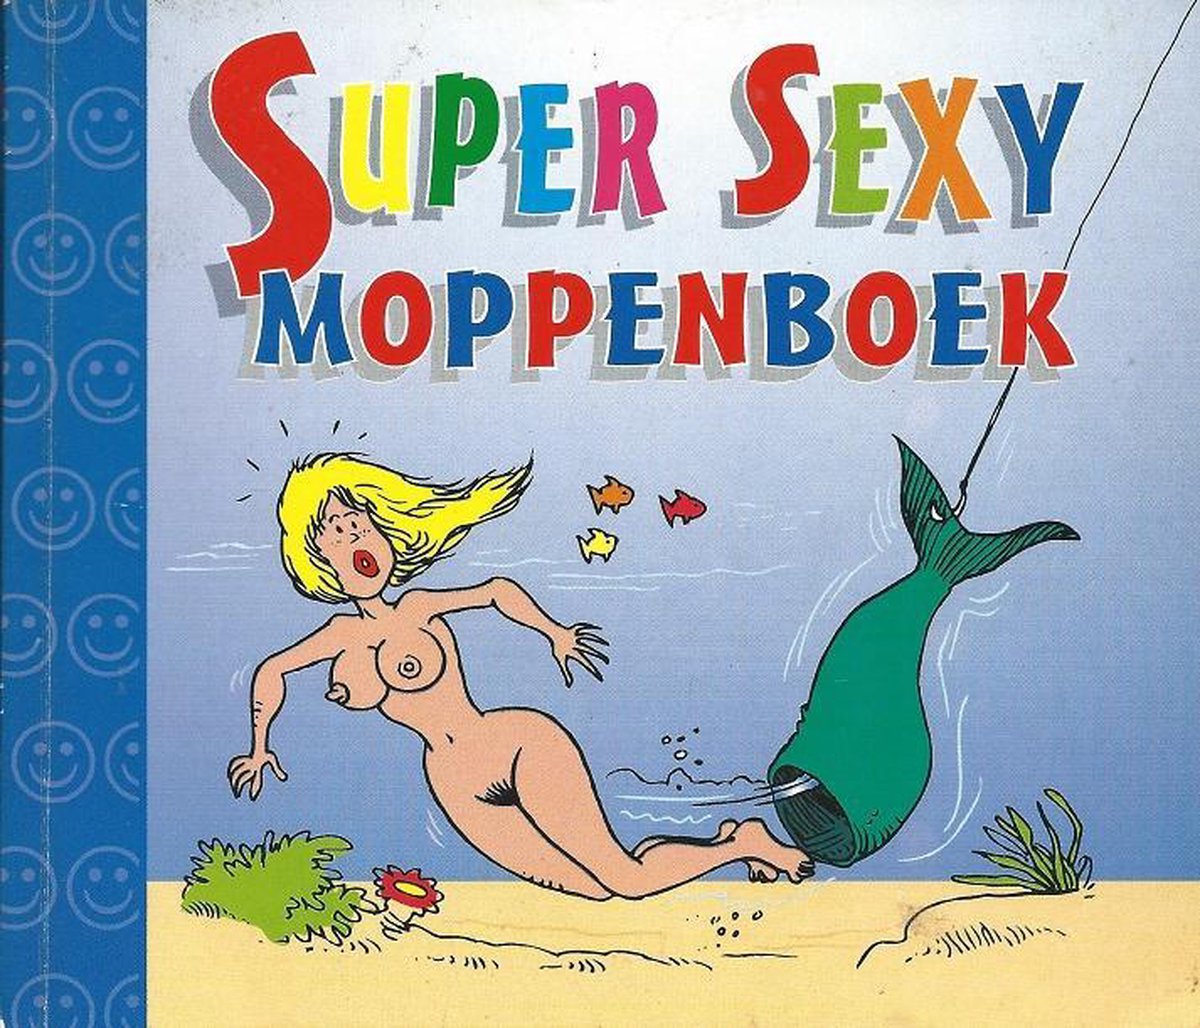 Super sexy moppenboek